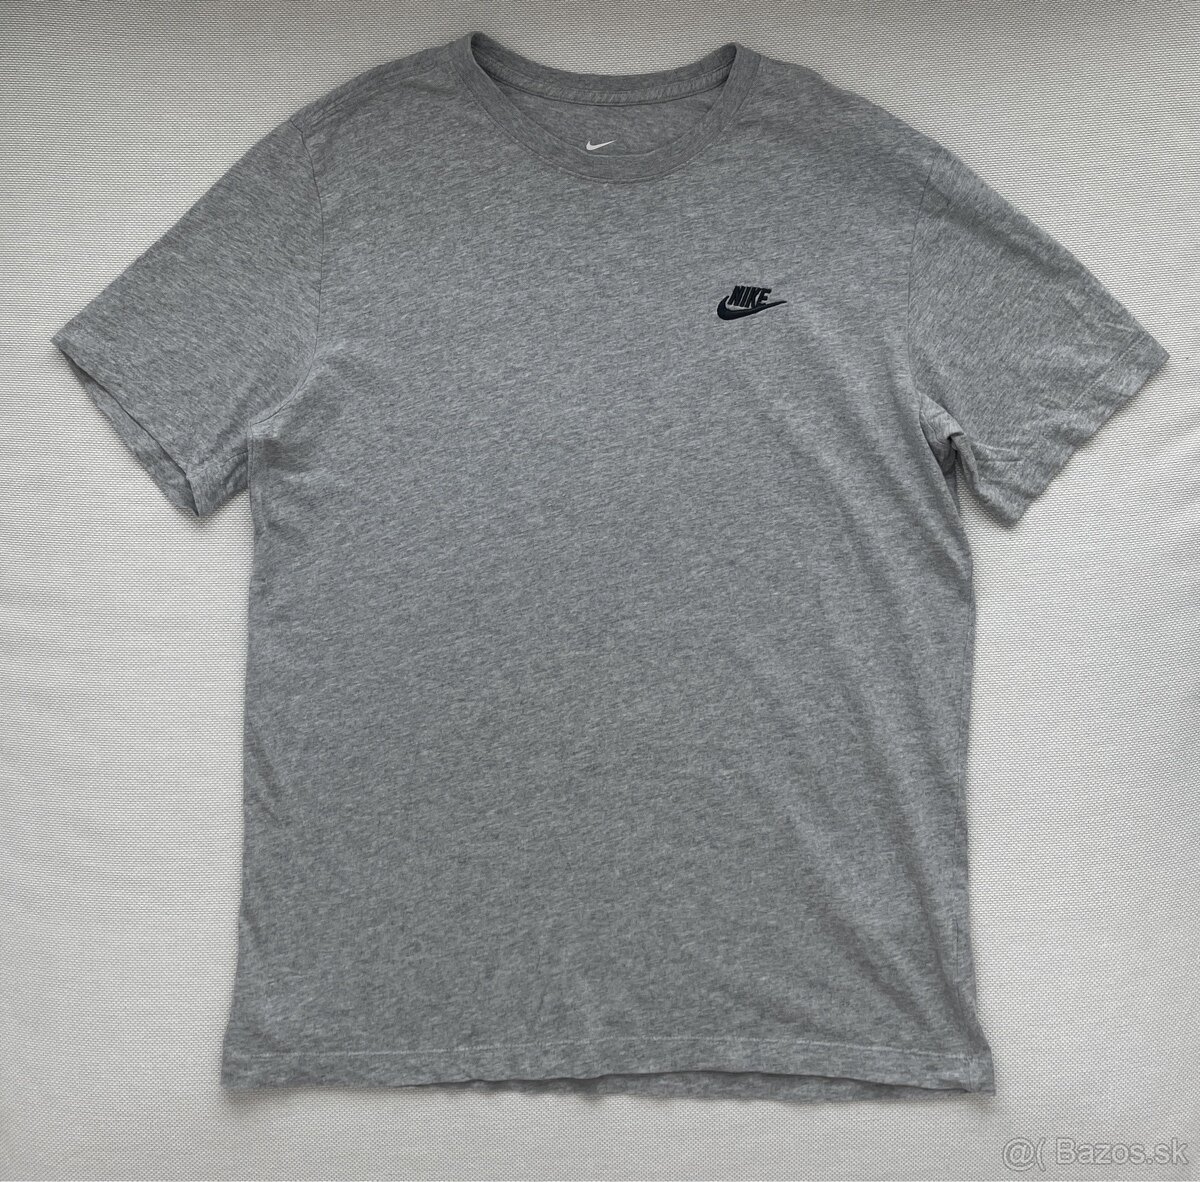 Nike Svetlosivé pánske tričko M s krátkym rukávom a logom